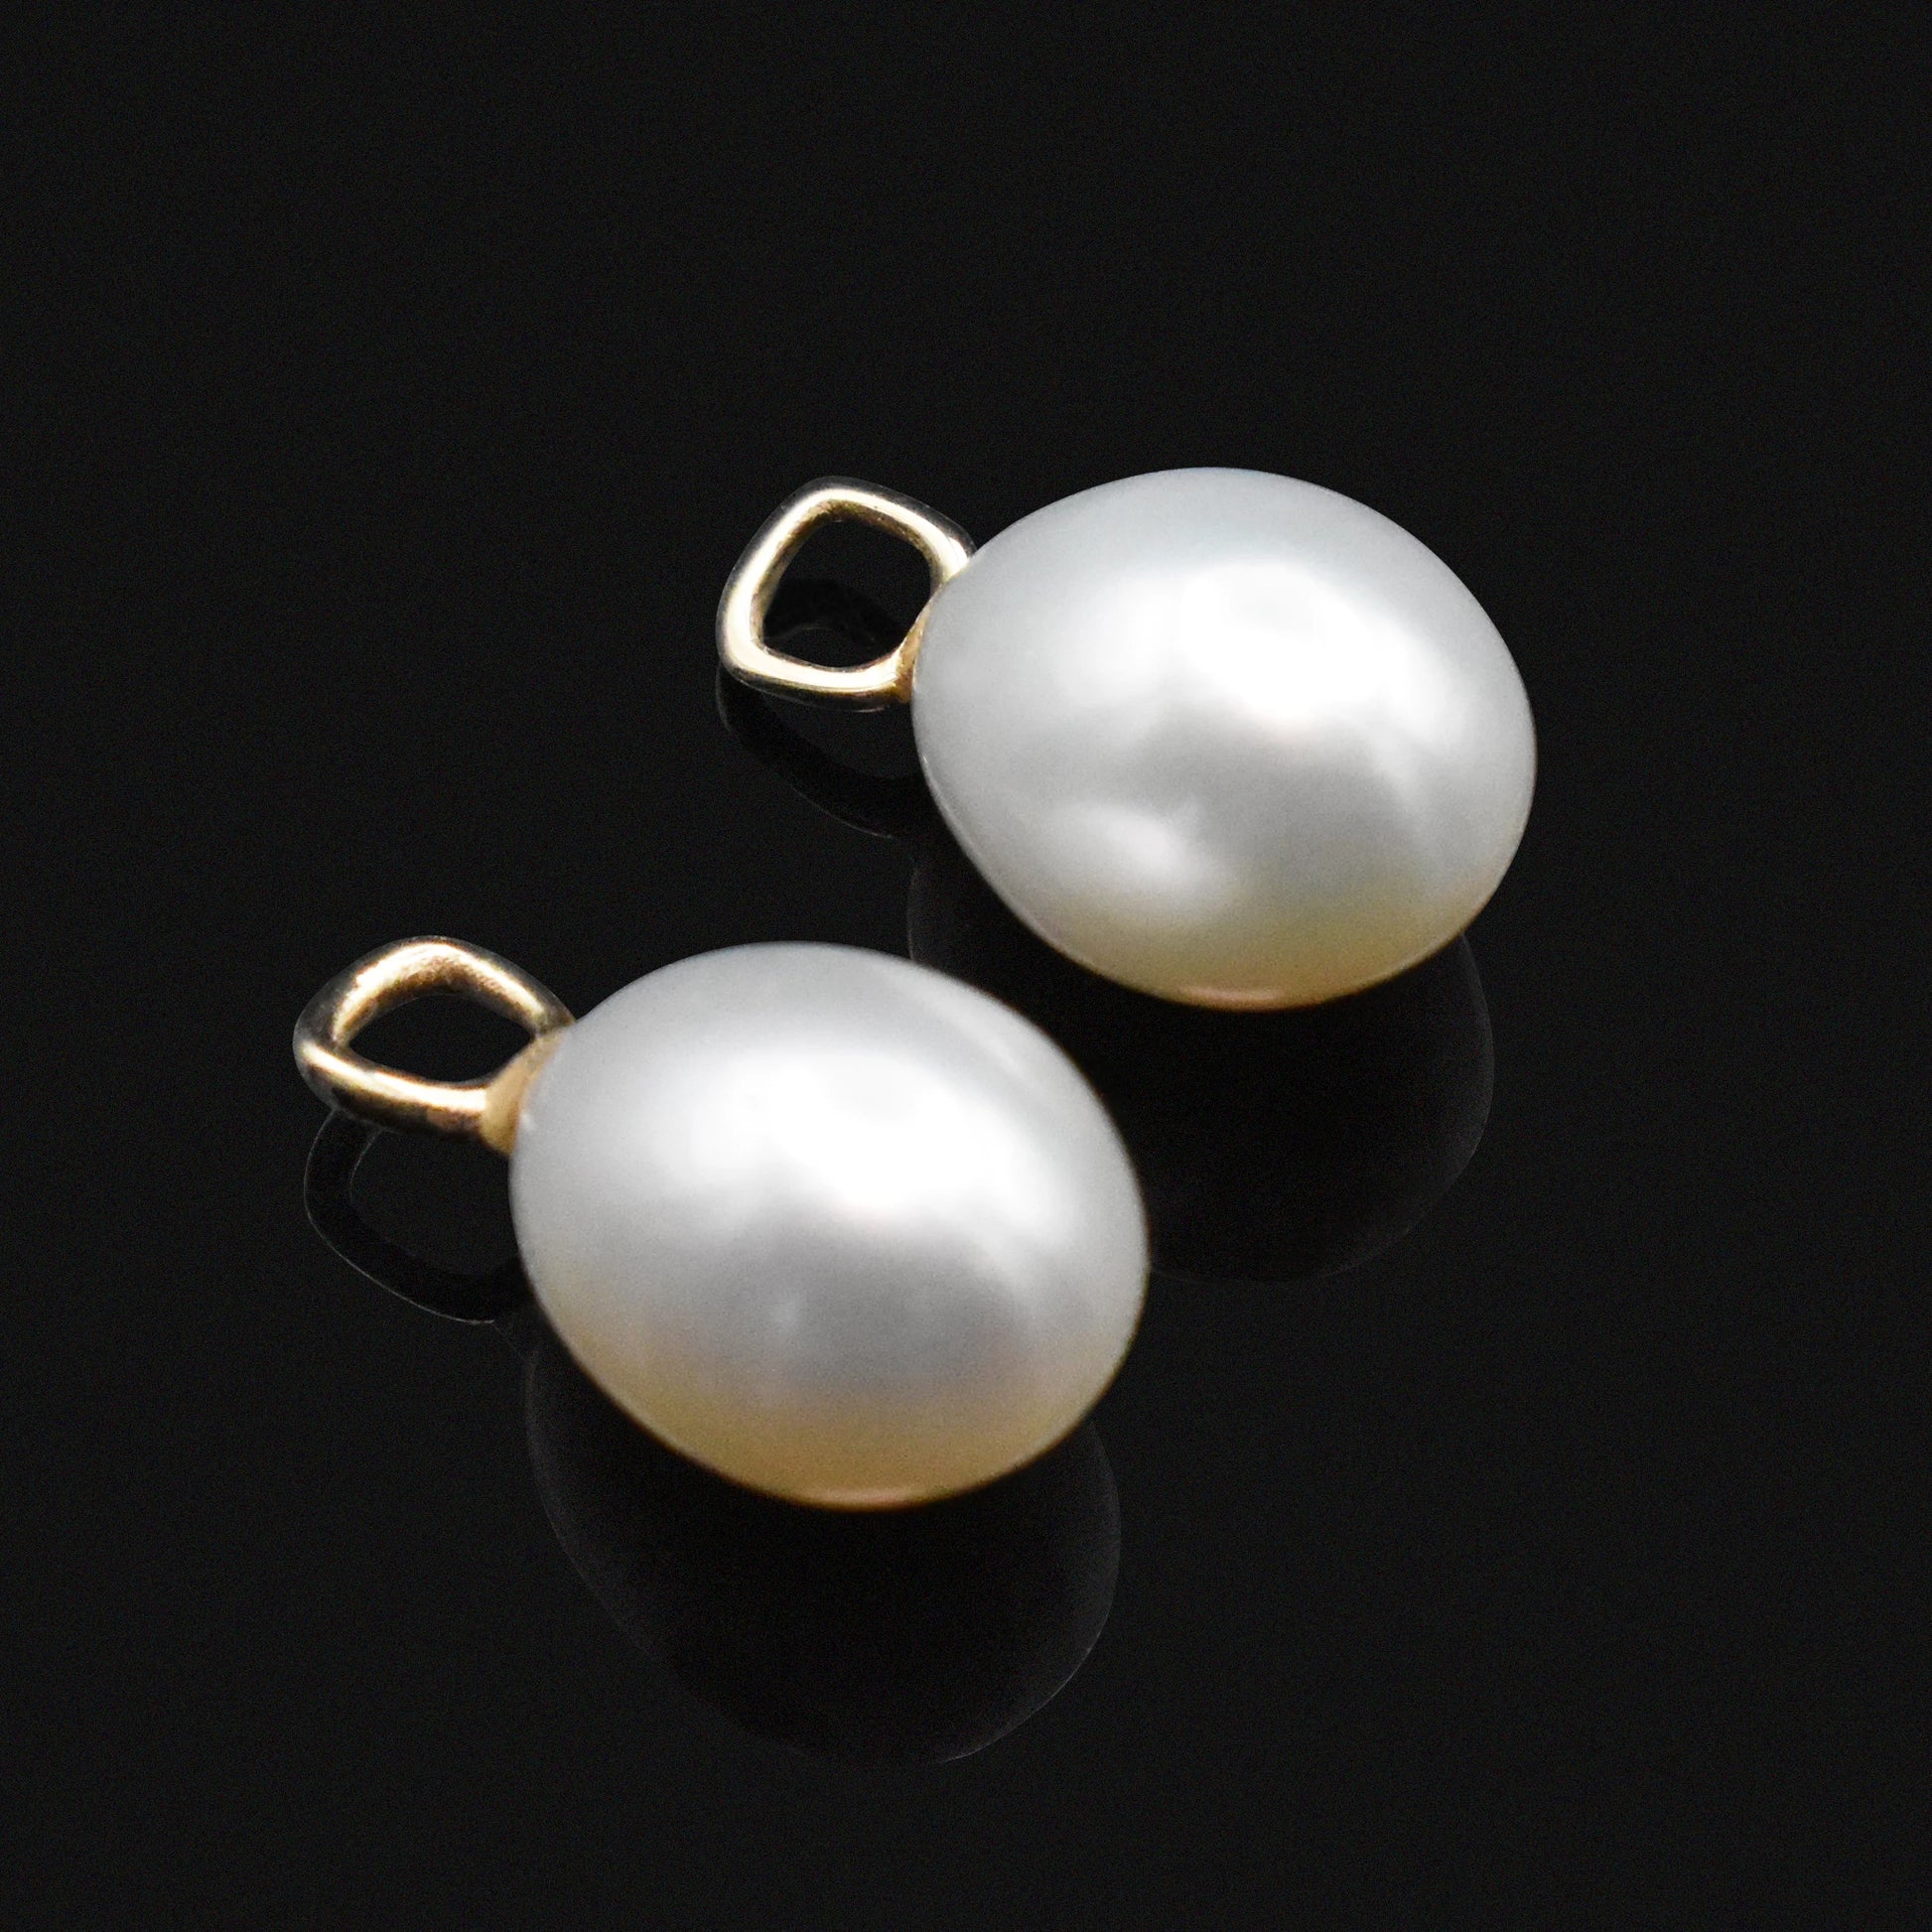 removable pearls pearl earrings huggies hoops